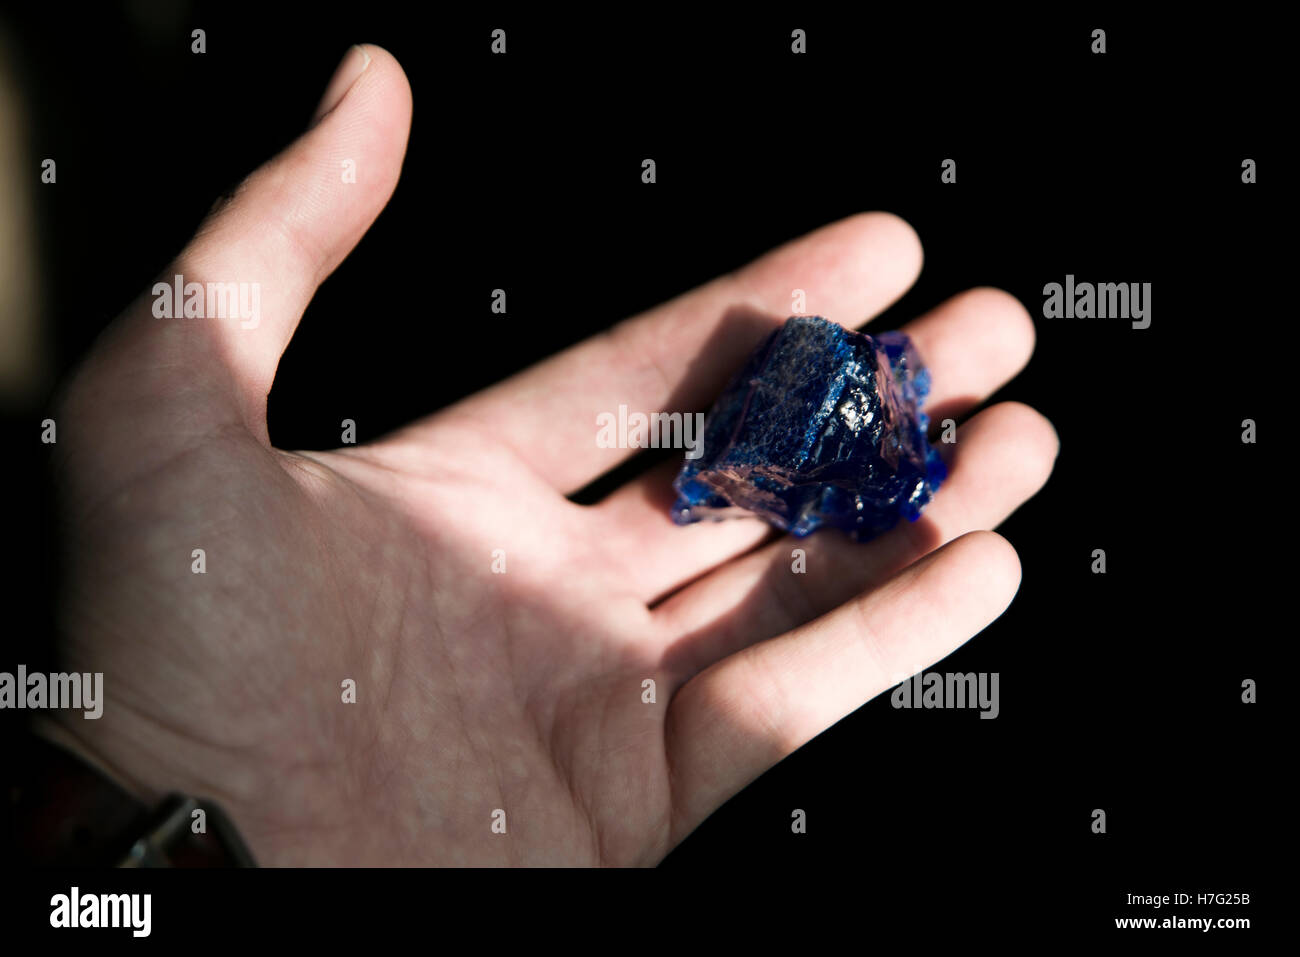 Verre bleu cassé sur une main. Le verre sera utilisé et fondue pour produire plus tard amulette. Banque D'Images